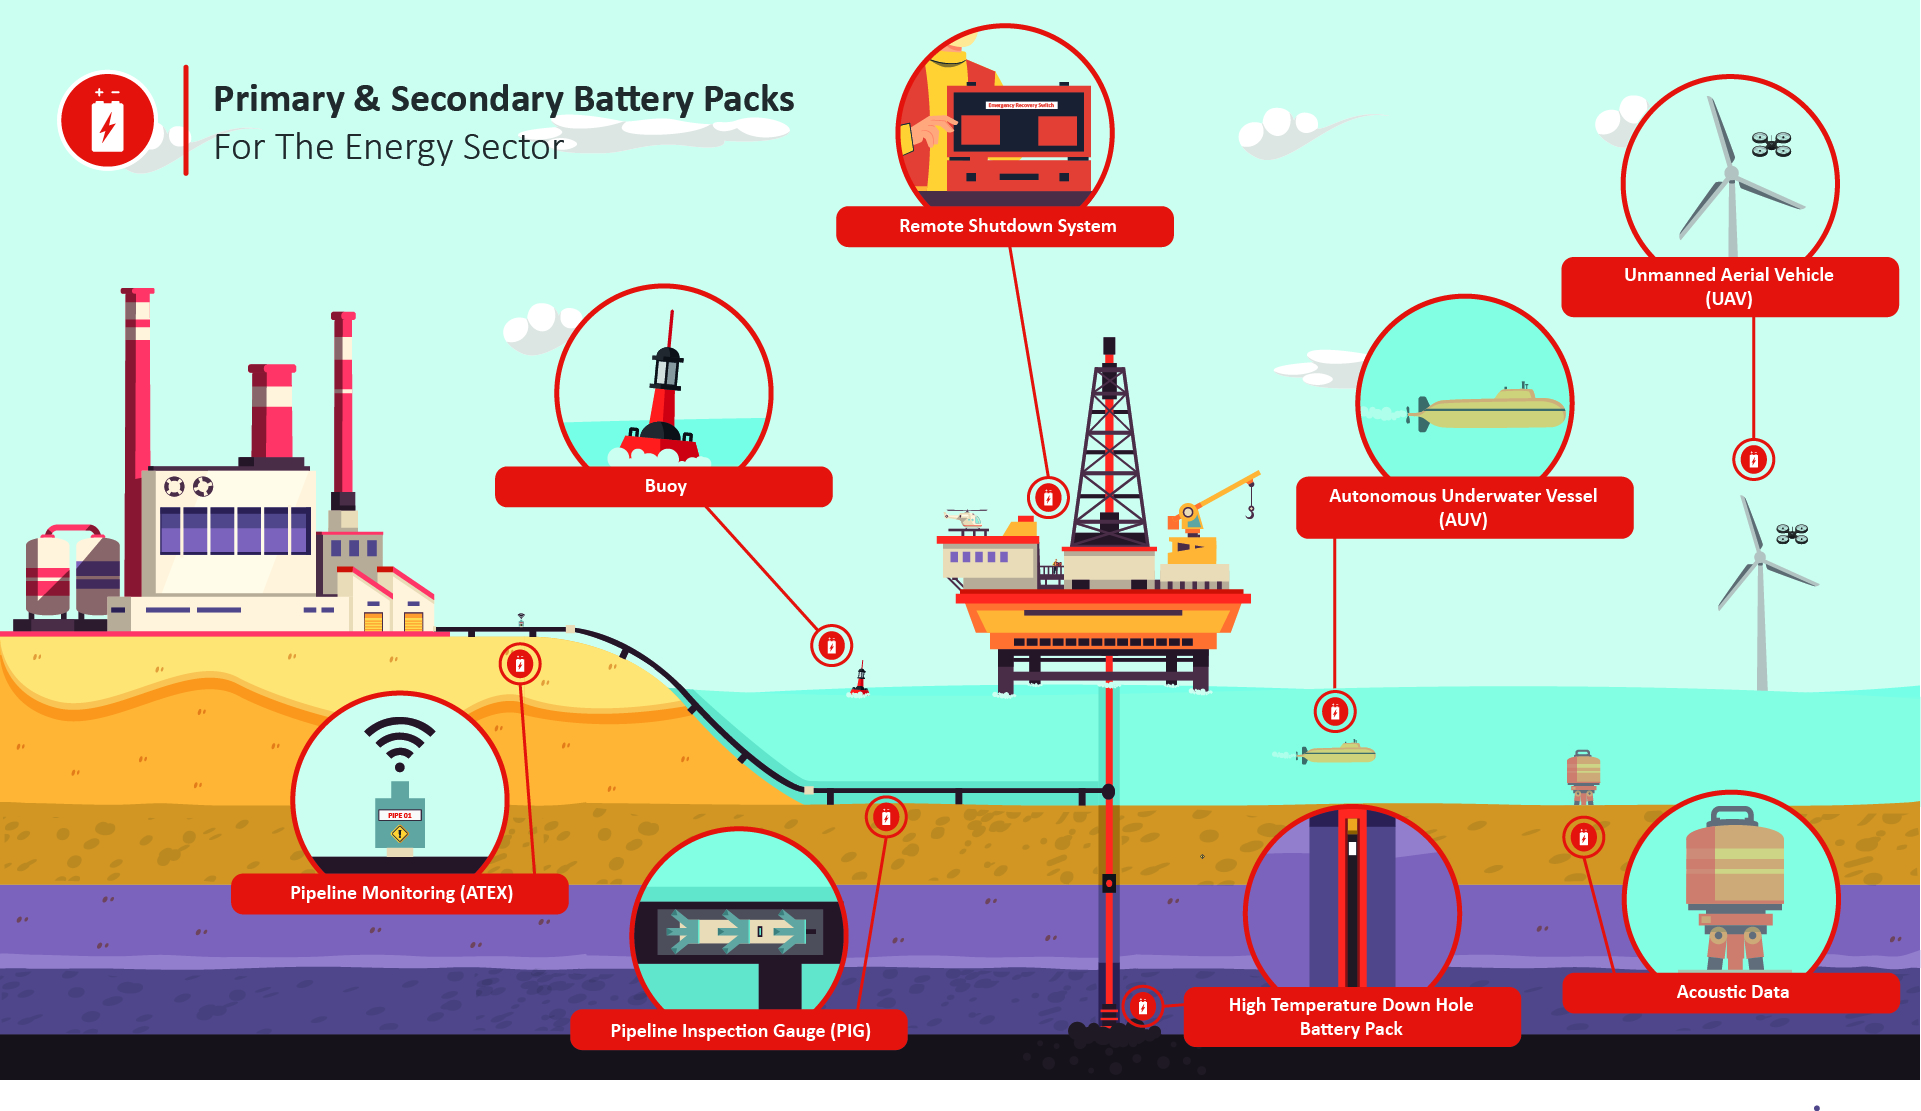 Steatite provides battery packs for the energy sector